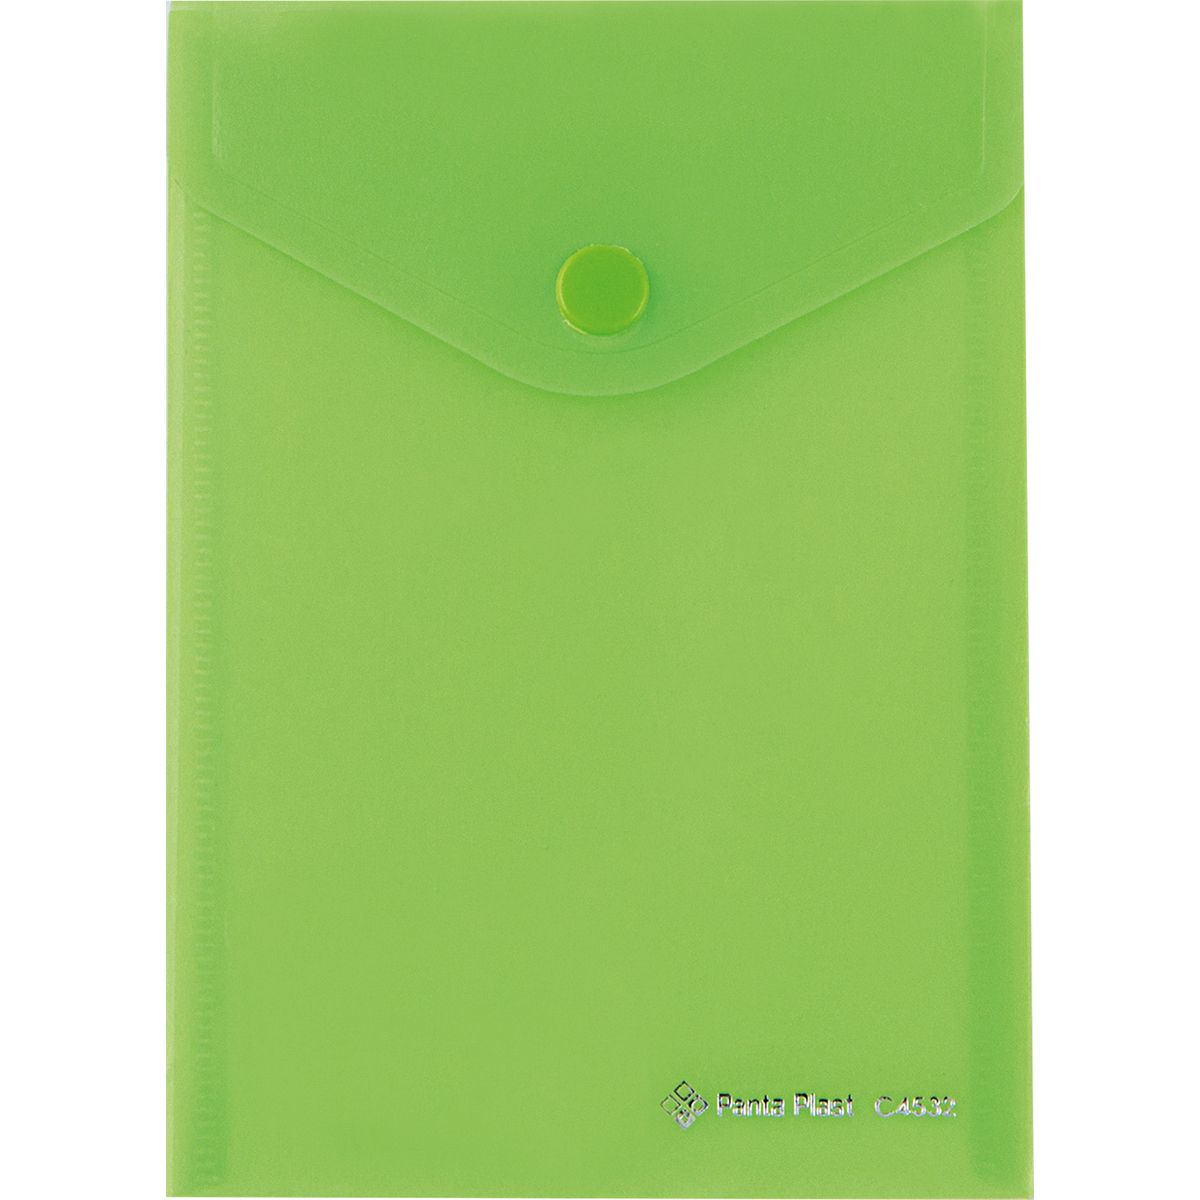 Teczka plastikowa na zatrzask A6 zielony Panta Plast (0410-0052-04)